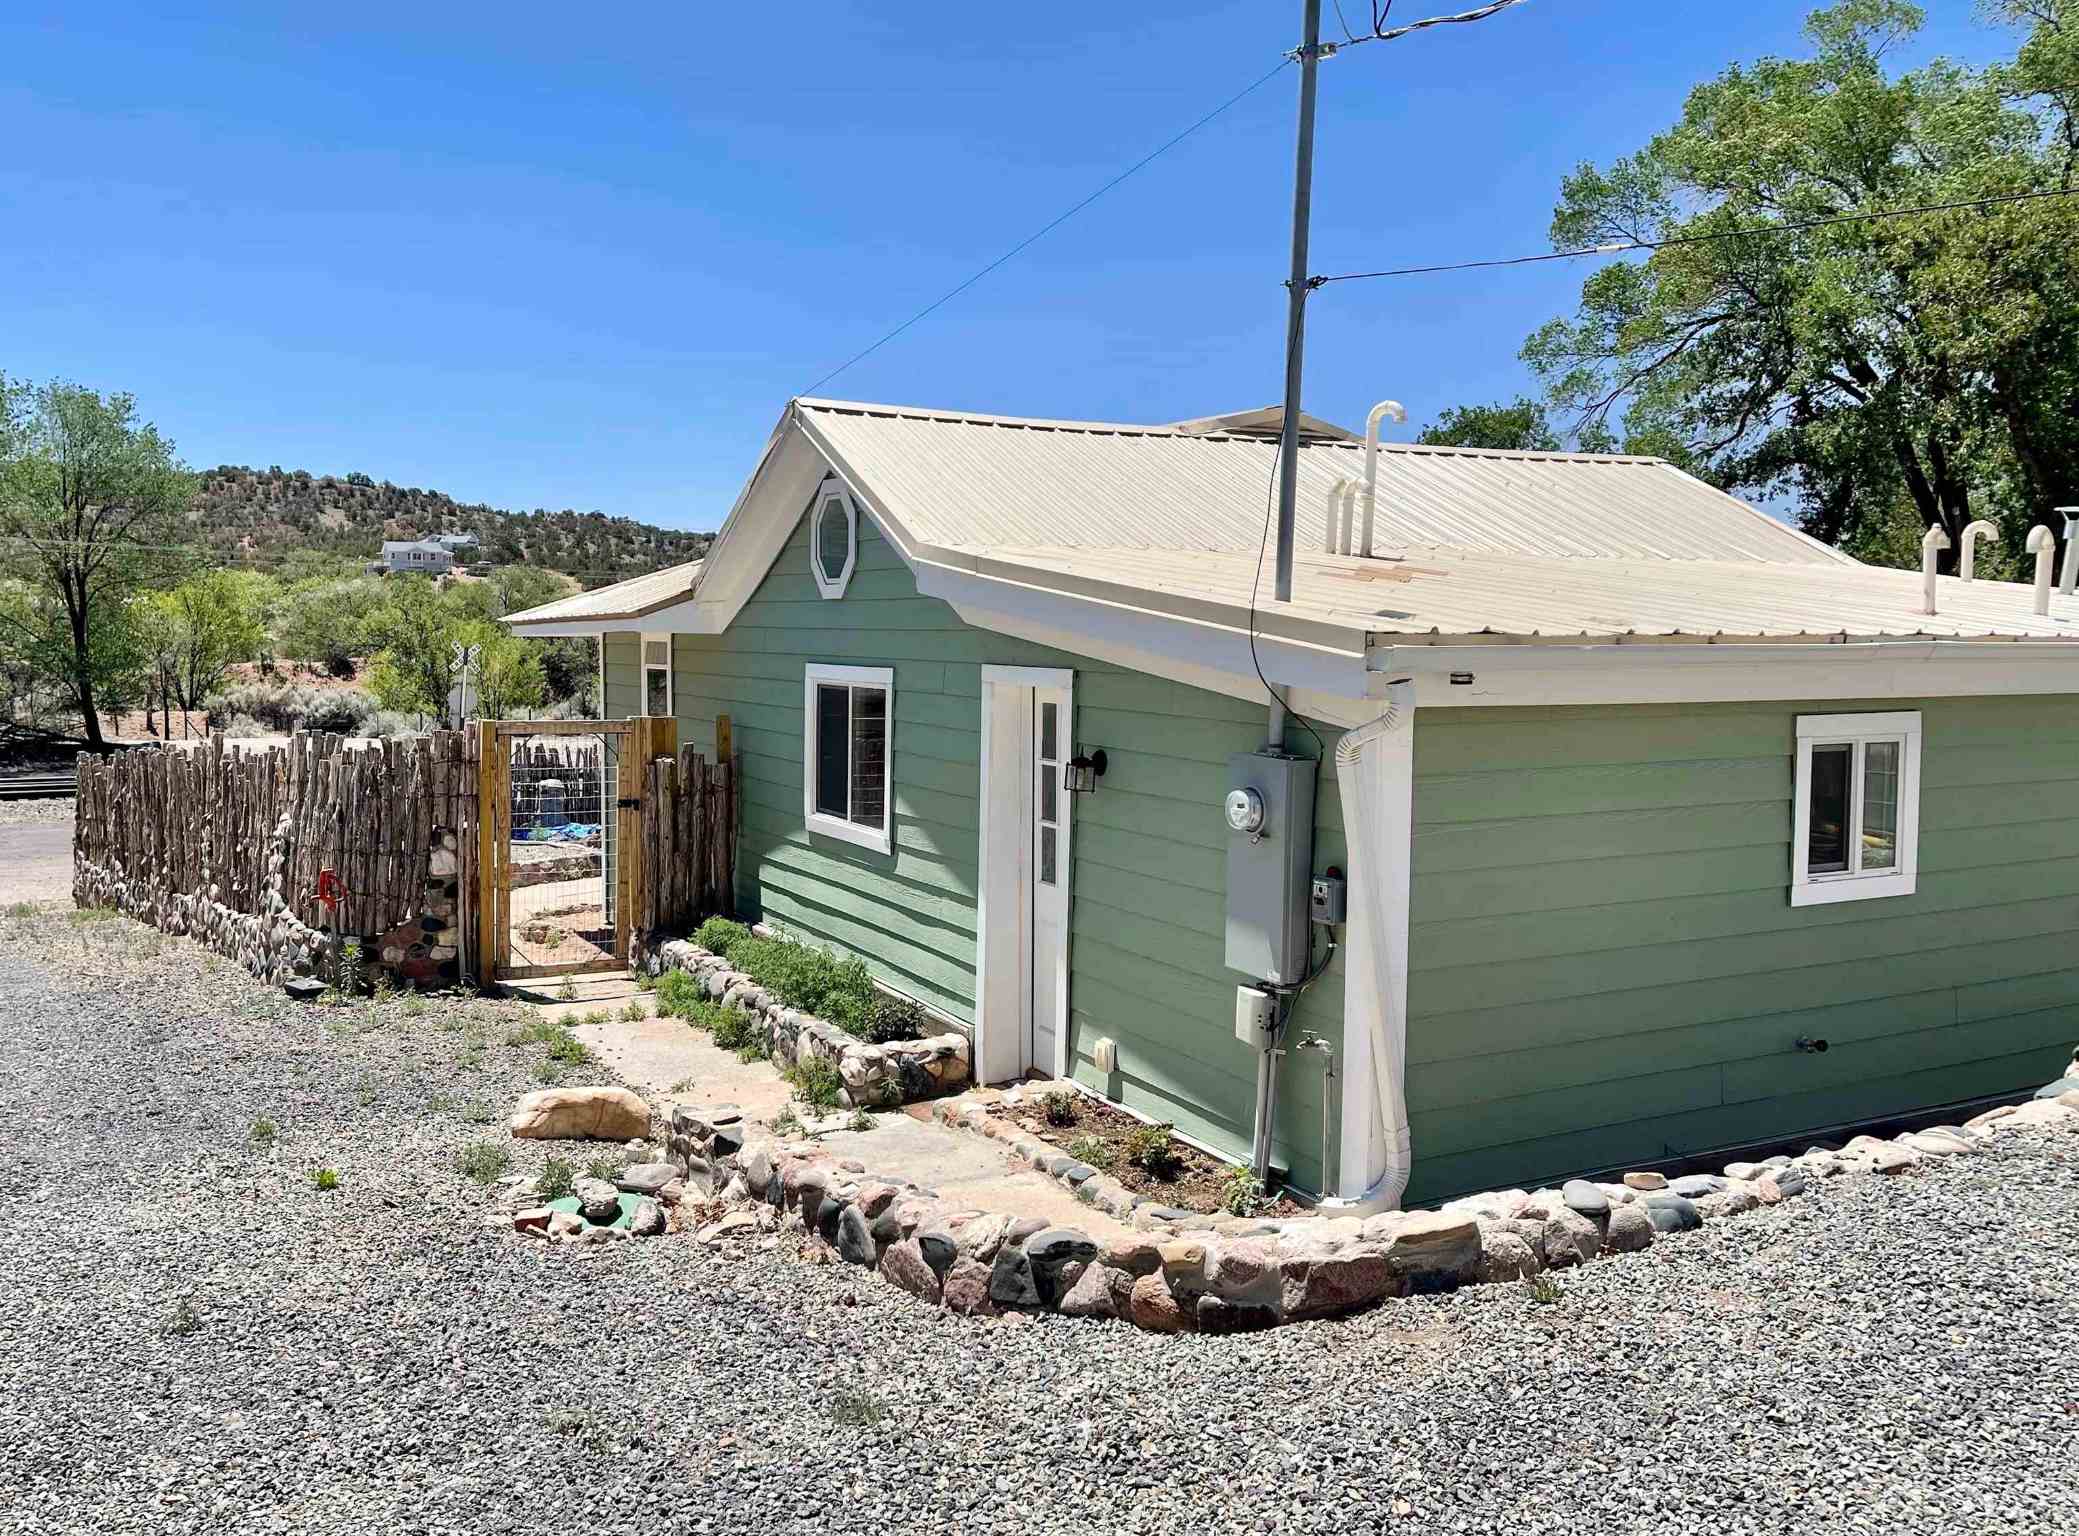 15 El Capitan, Lamy, New Mexico 87540, 2 Bedrooms Bedrooms, ,2 BathroomsBathrooms,Residential,For Sale,15 El Capitan,202201961